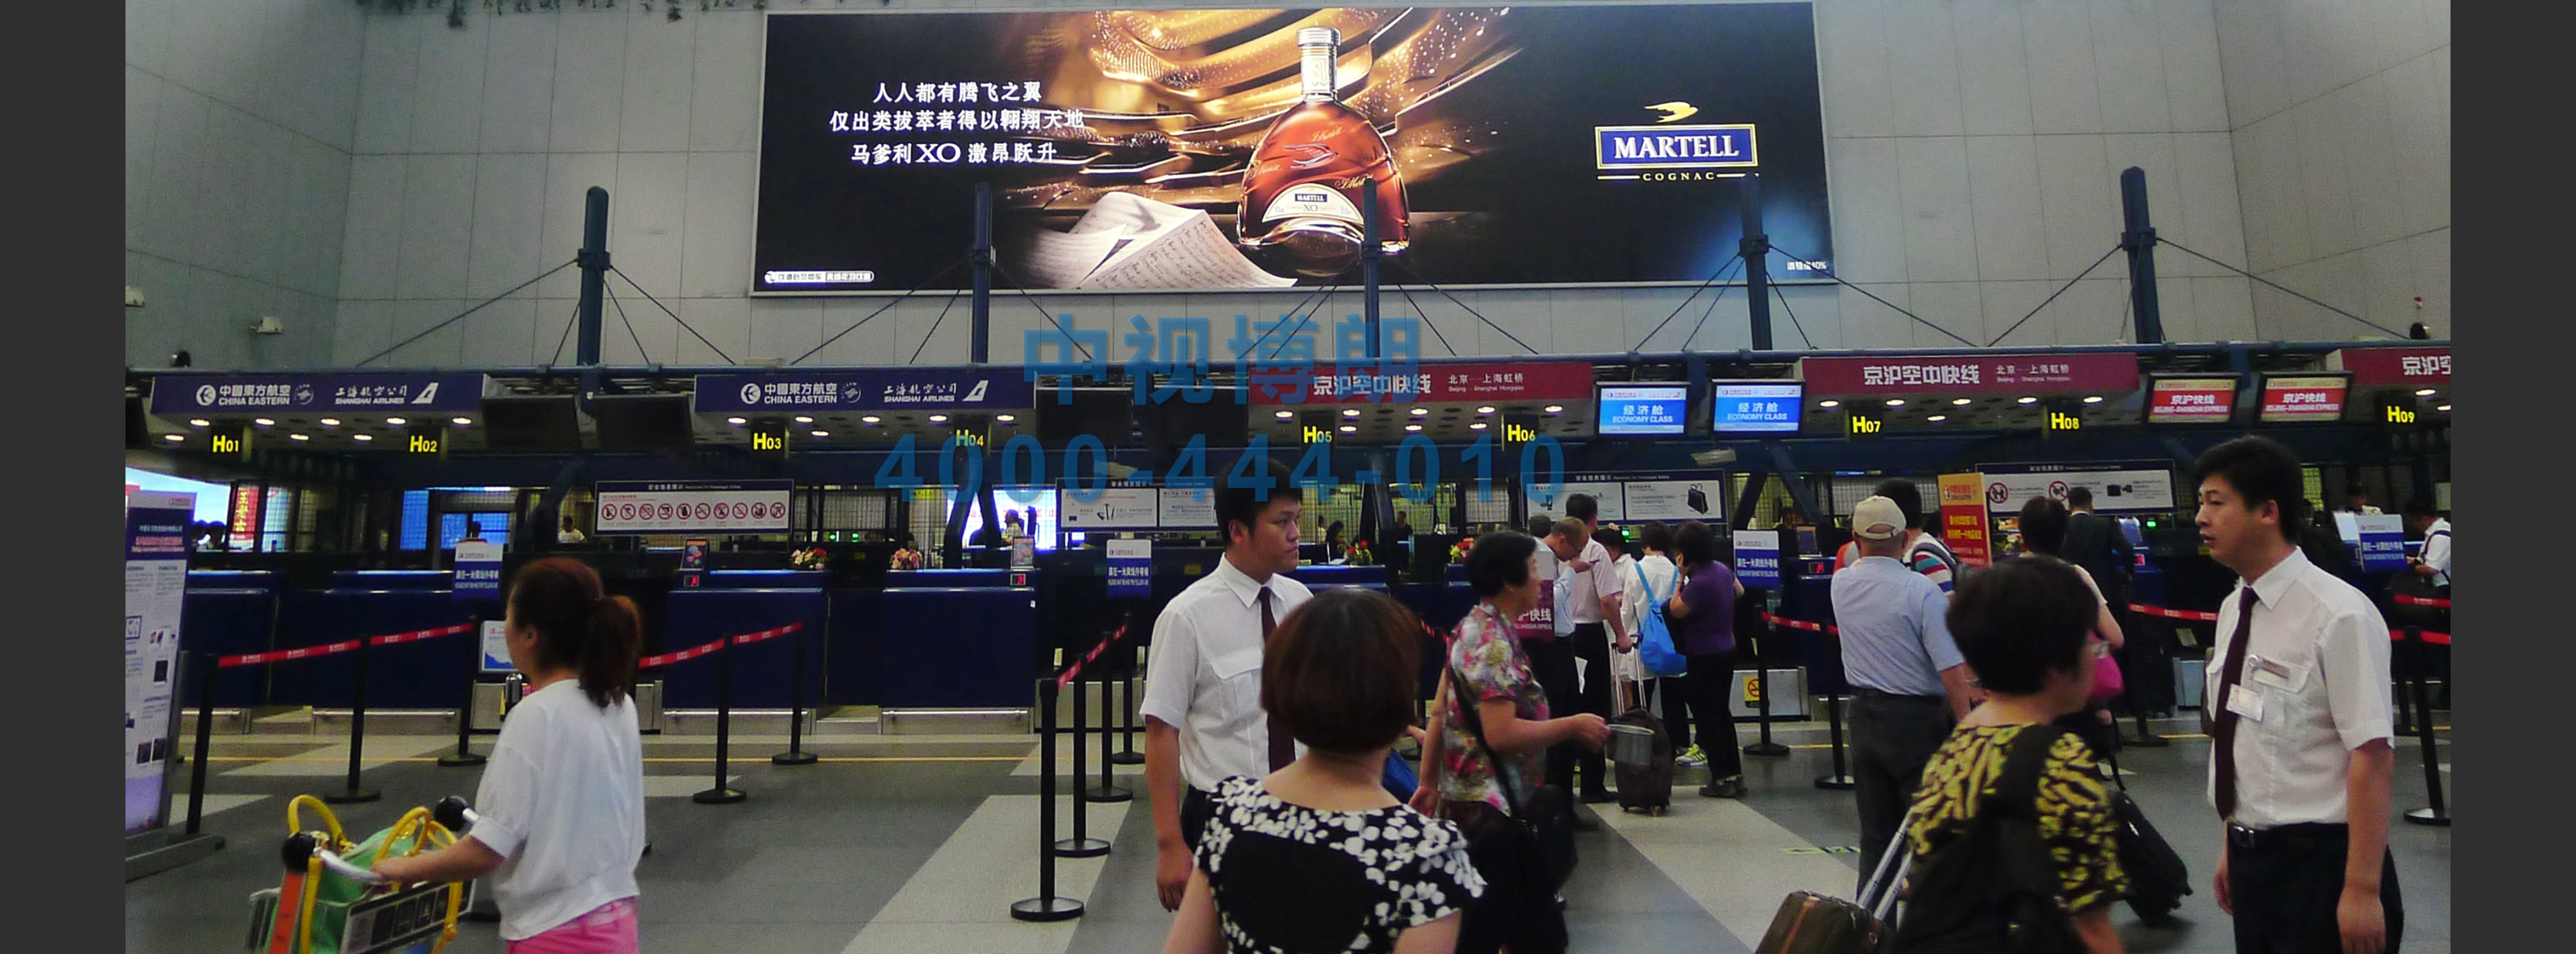 北京首都机场广告-T2 Domestic Departure Check-in Hall Elevated Light Box 1B